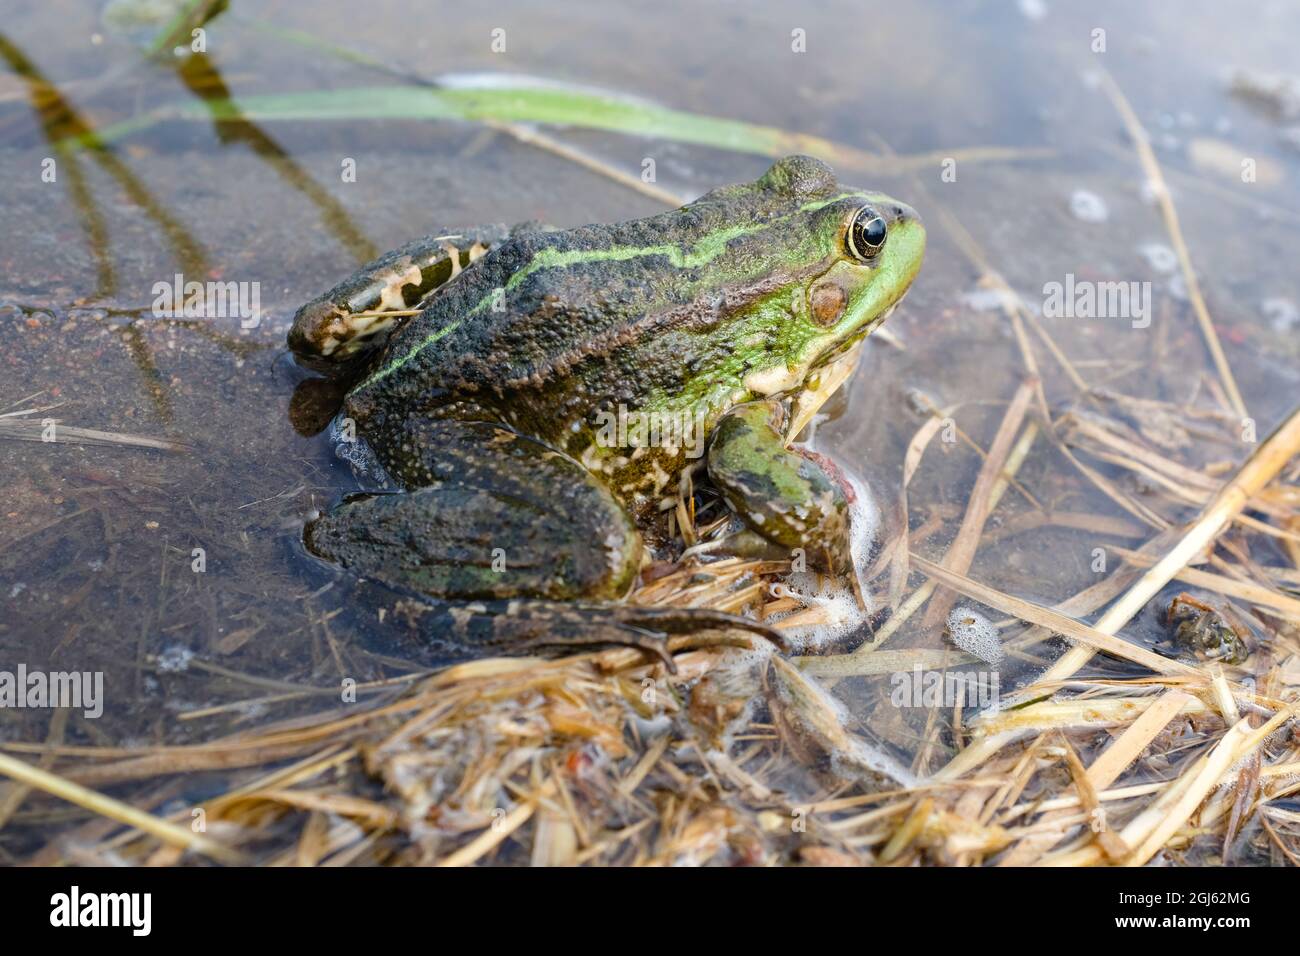 Rana del lago, rana di palude, rana commestibile nel laghetto. La rana verde è nell'acqua Foto Stock